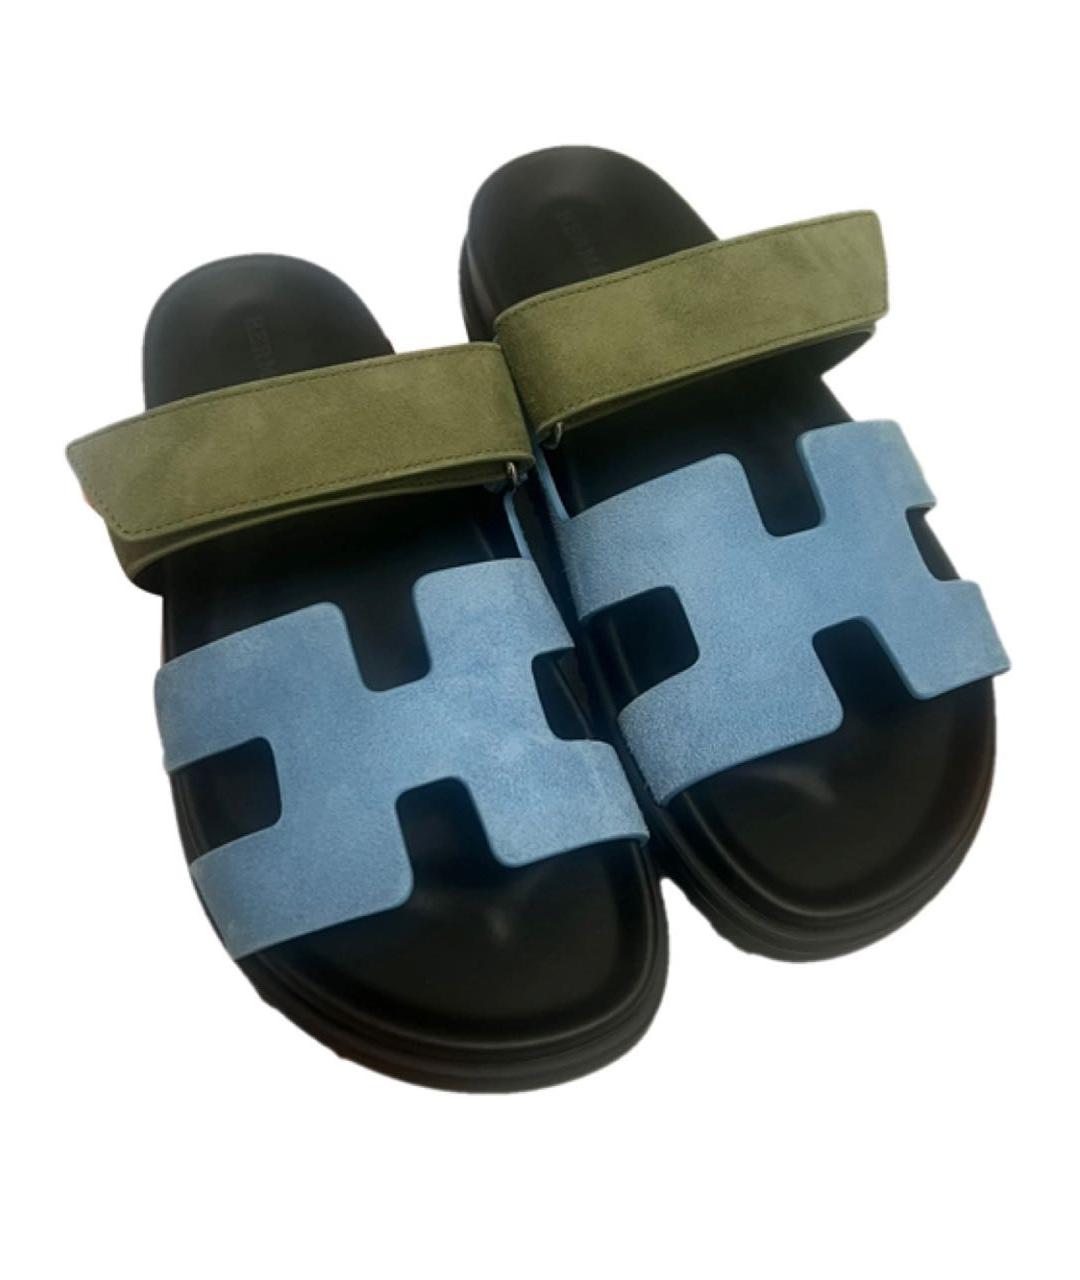 HERMES Голубые замшевые сандалии, фото 2